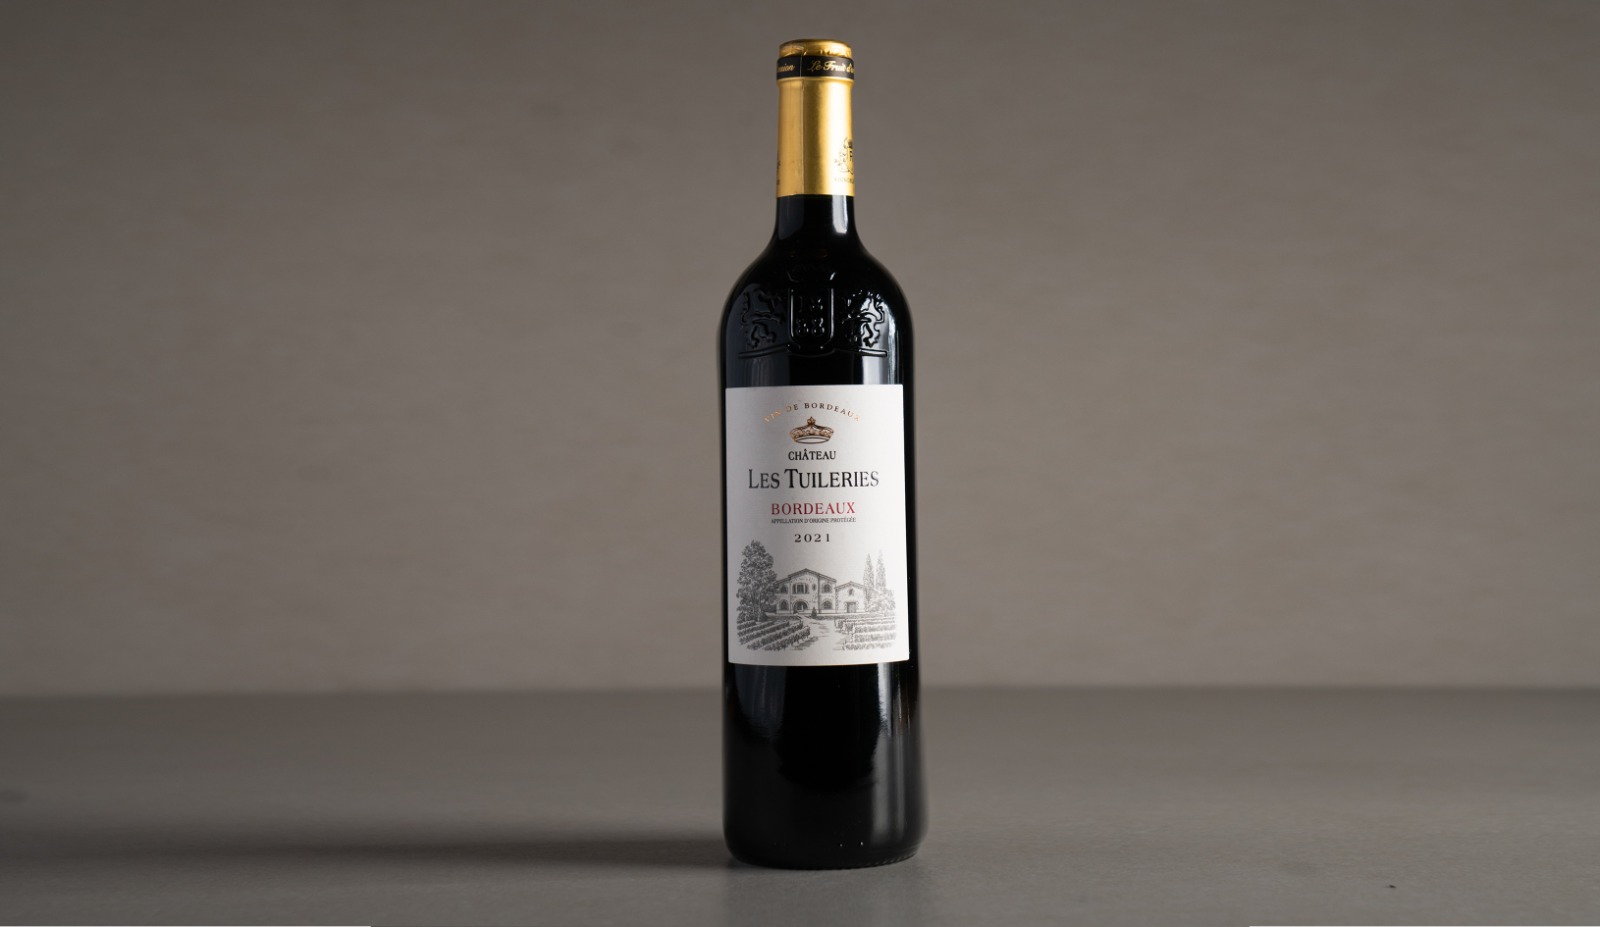 יין אדום יבש " שאטו לה טווילרי בורדו" 2021